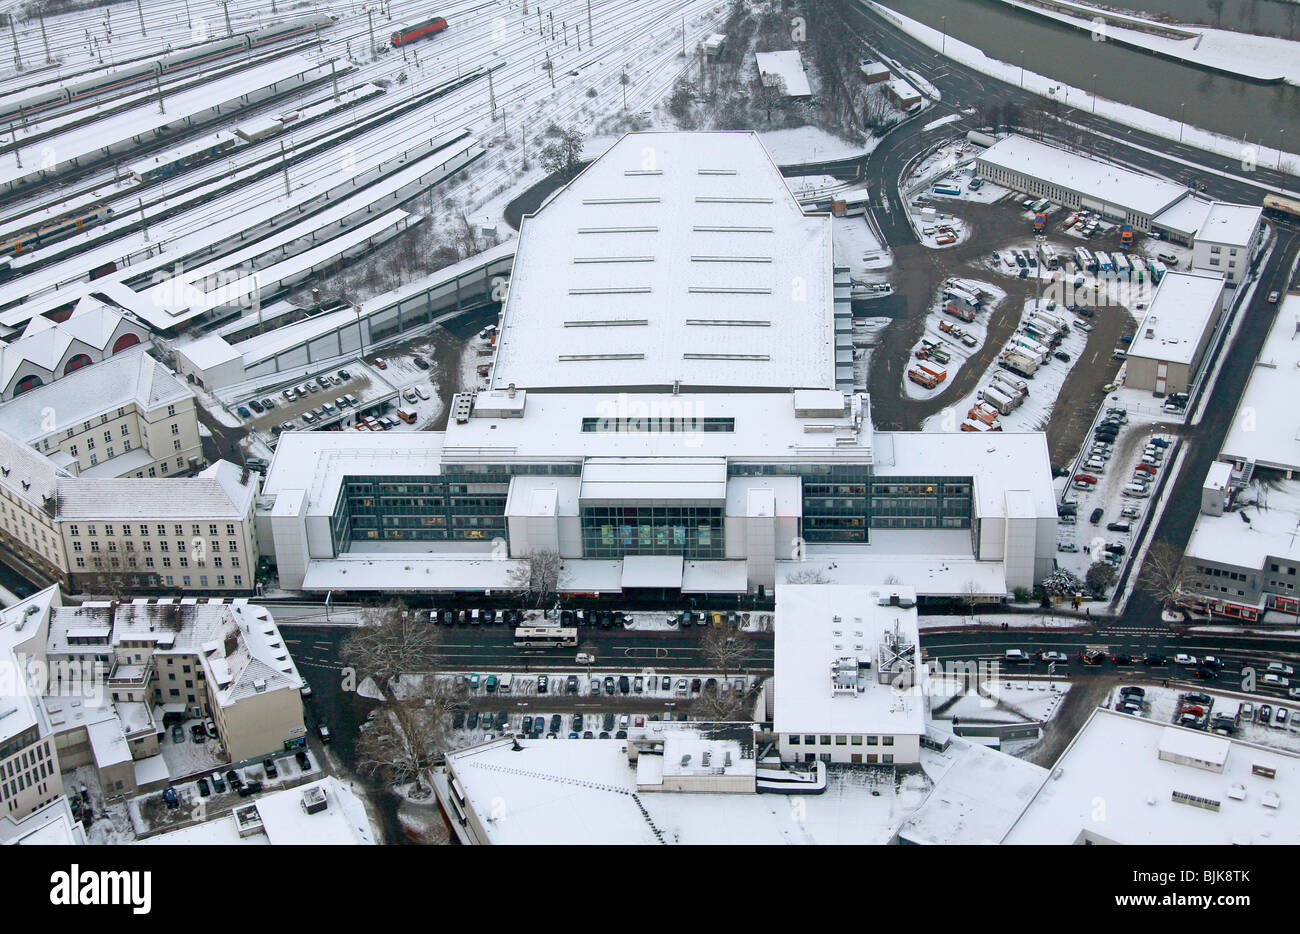 Foto aerea, tecniche Municipio nella neve, Hamm, la zona della Ruhr, Renania settentrionale-Vestfalia, Germania, Europa Foto Stock